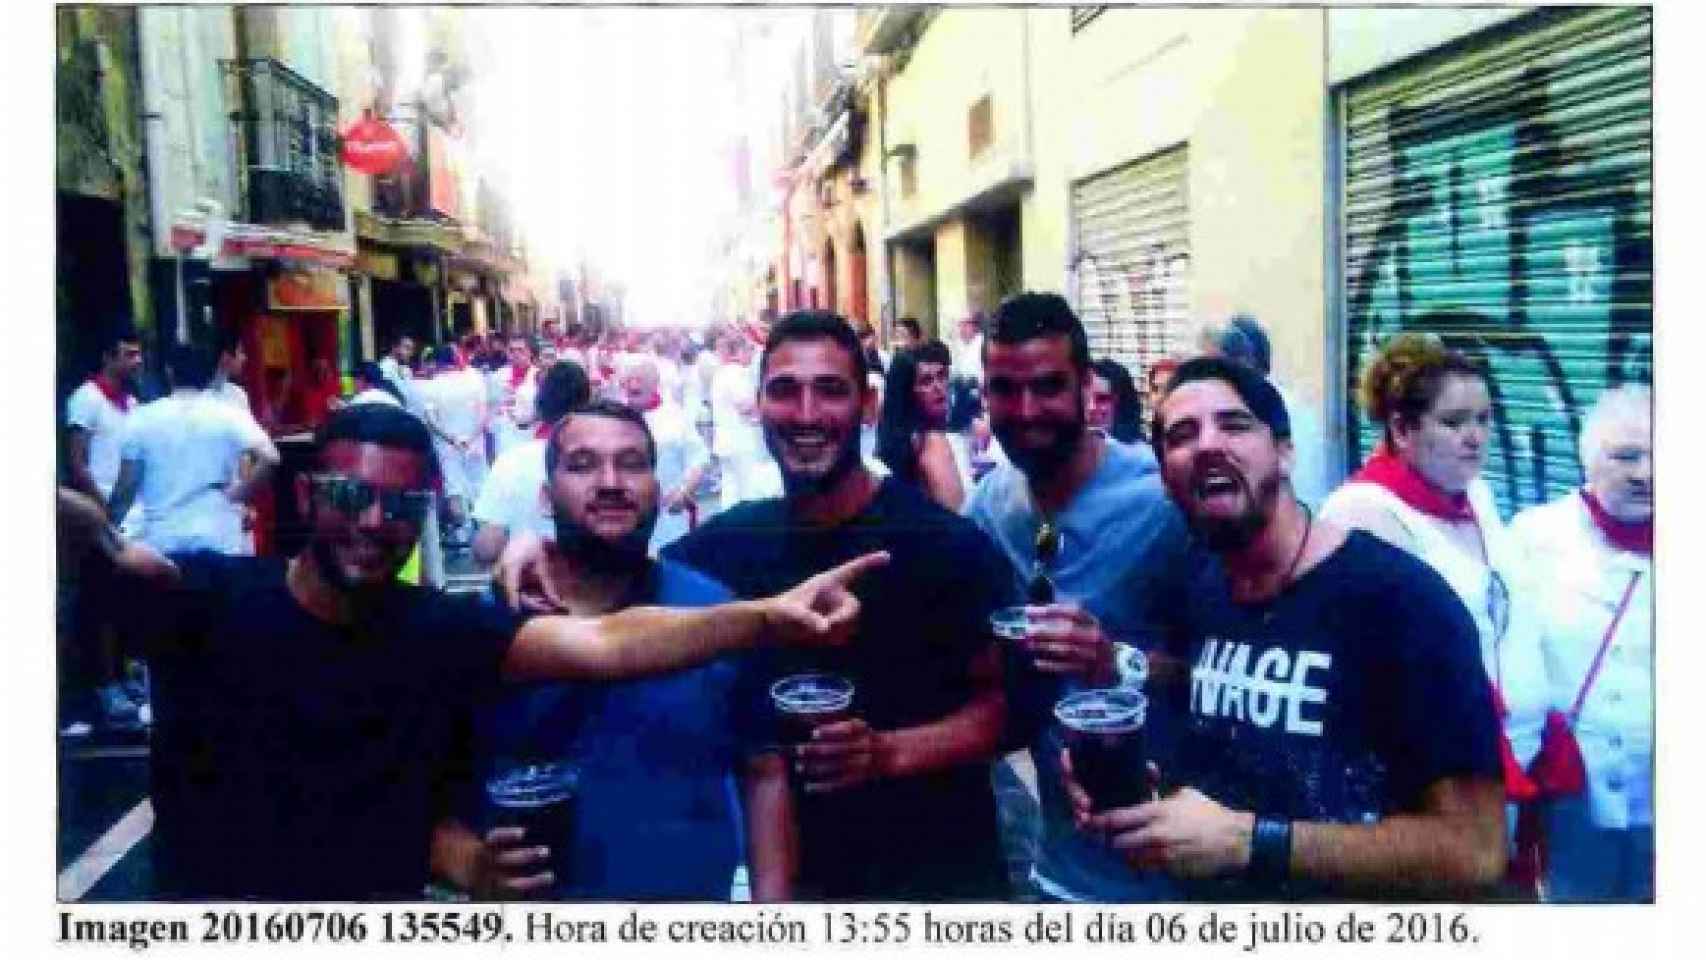 Los cinco sevillanos que se sientan en el banquillo acusados de violar a una joven en Pamplona.